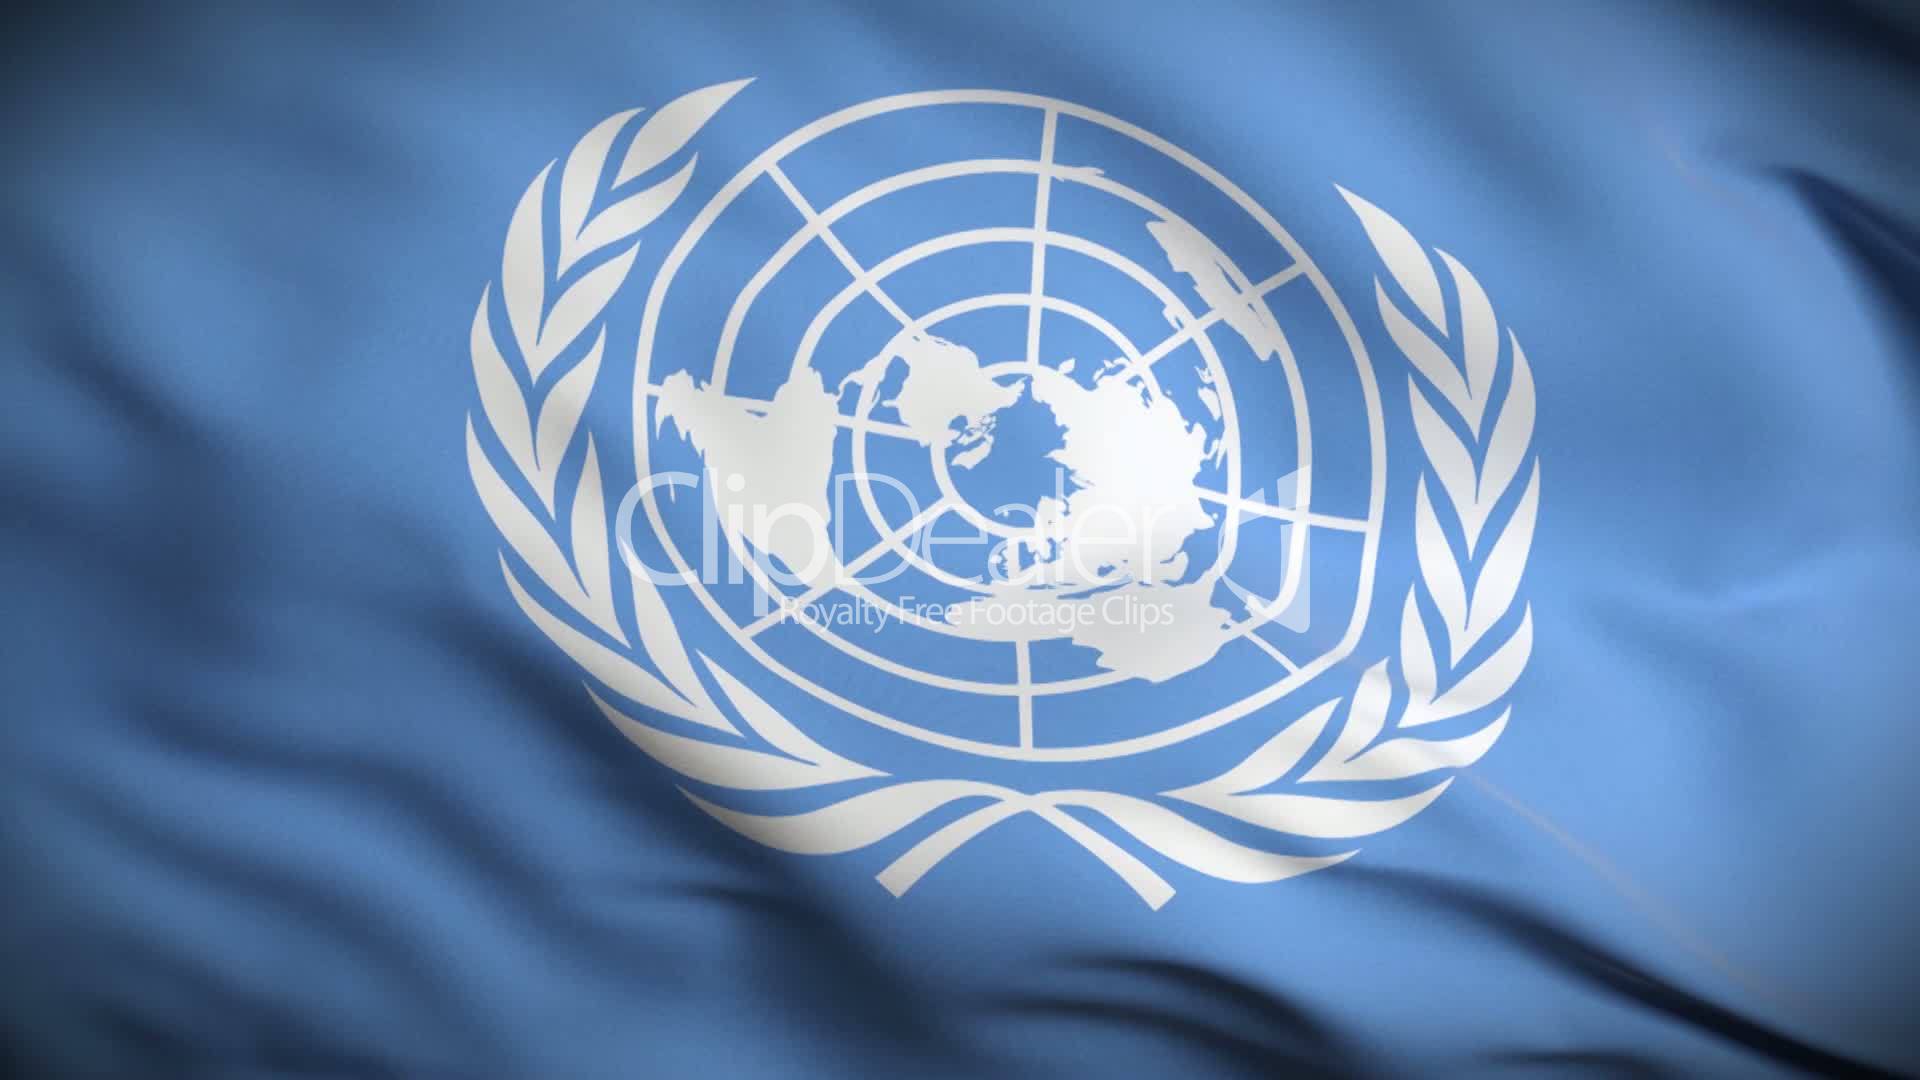 Организация Объединённых наций